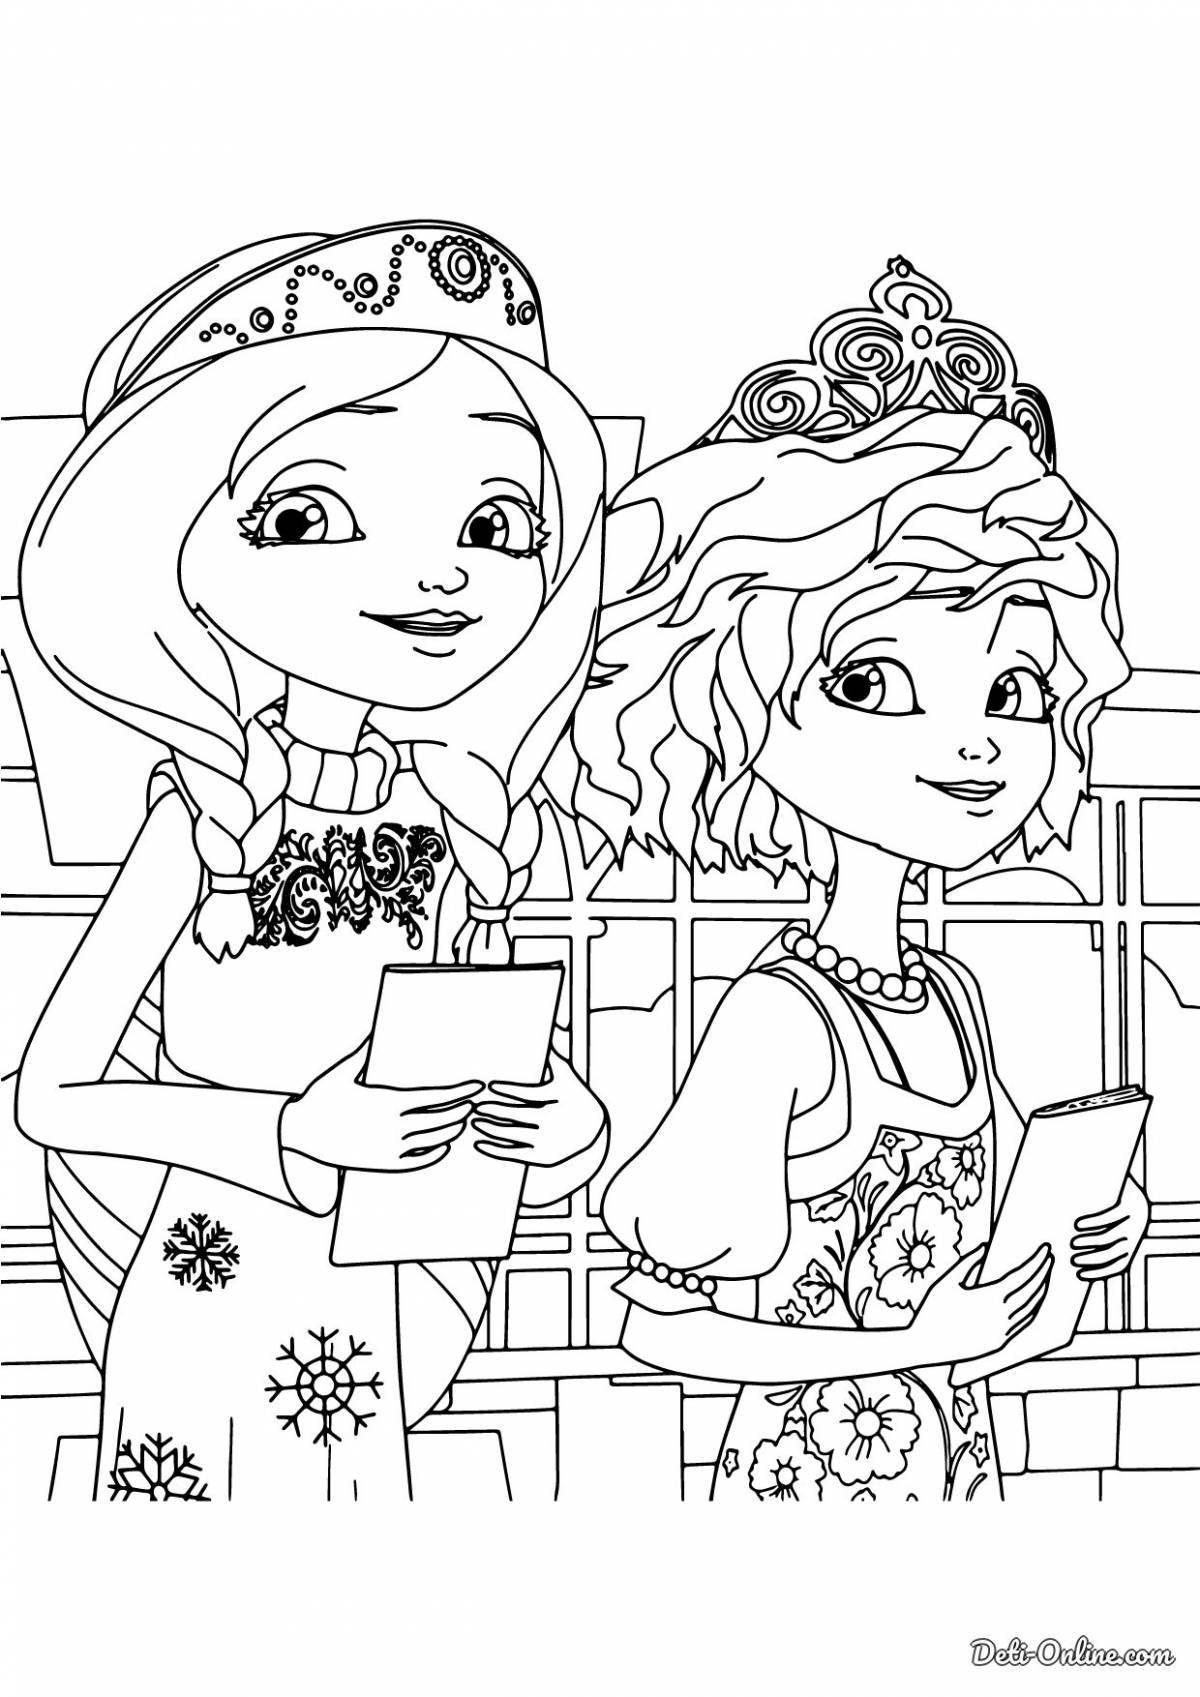 Joyful coloring princess cartoon